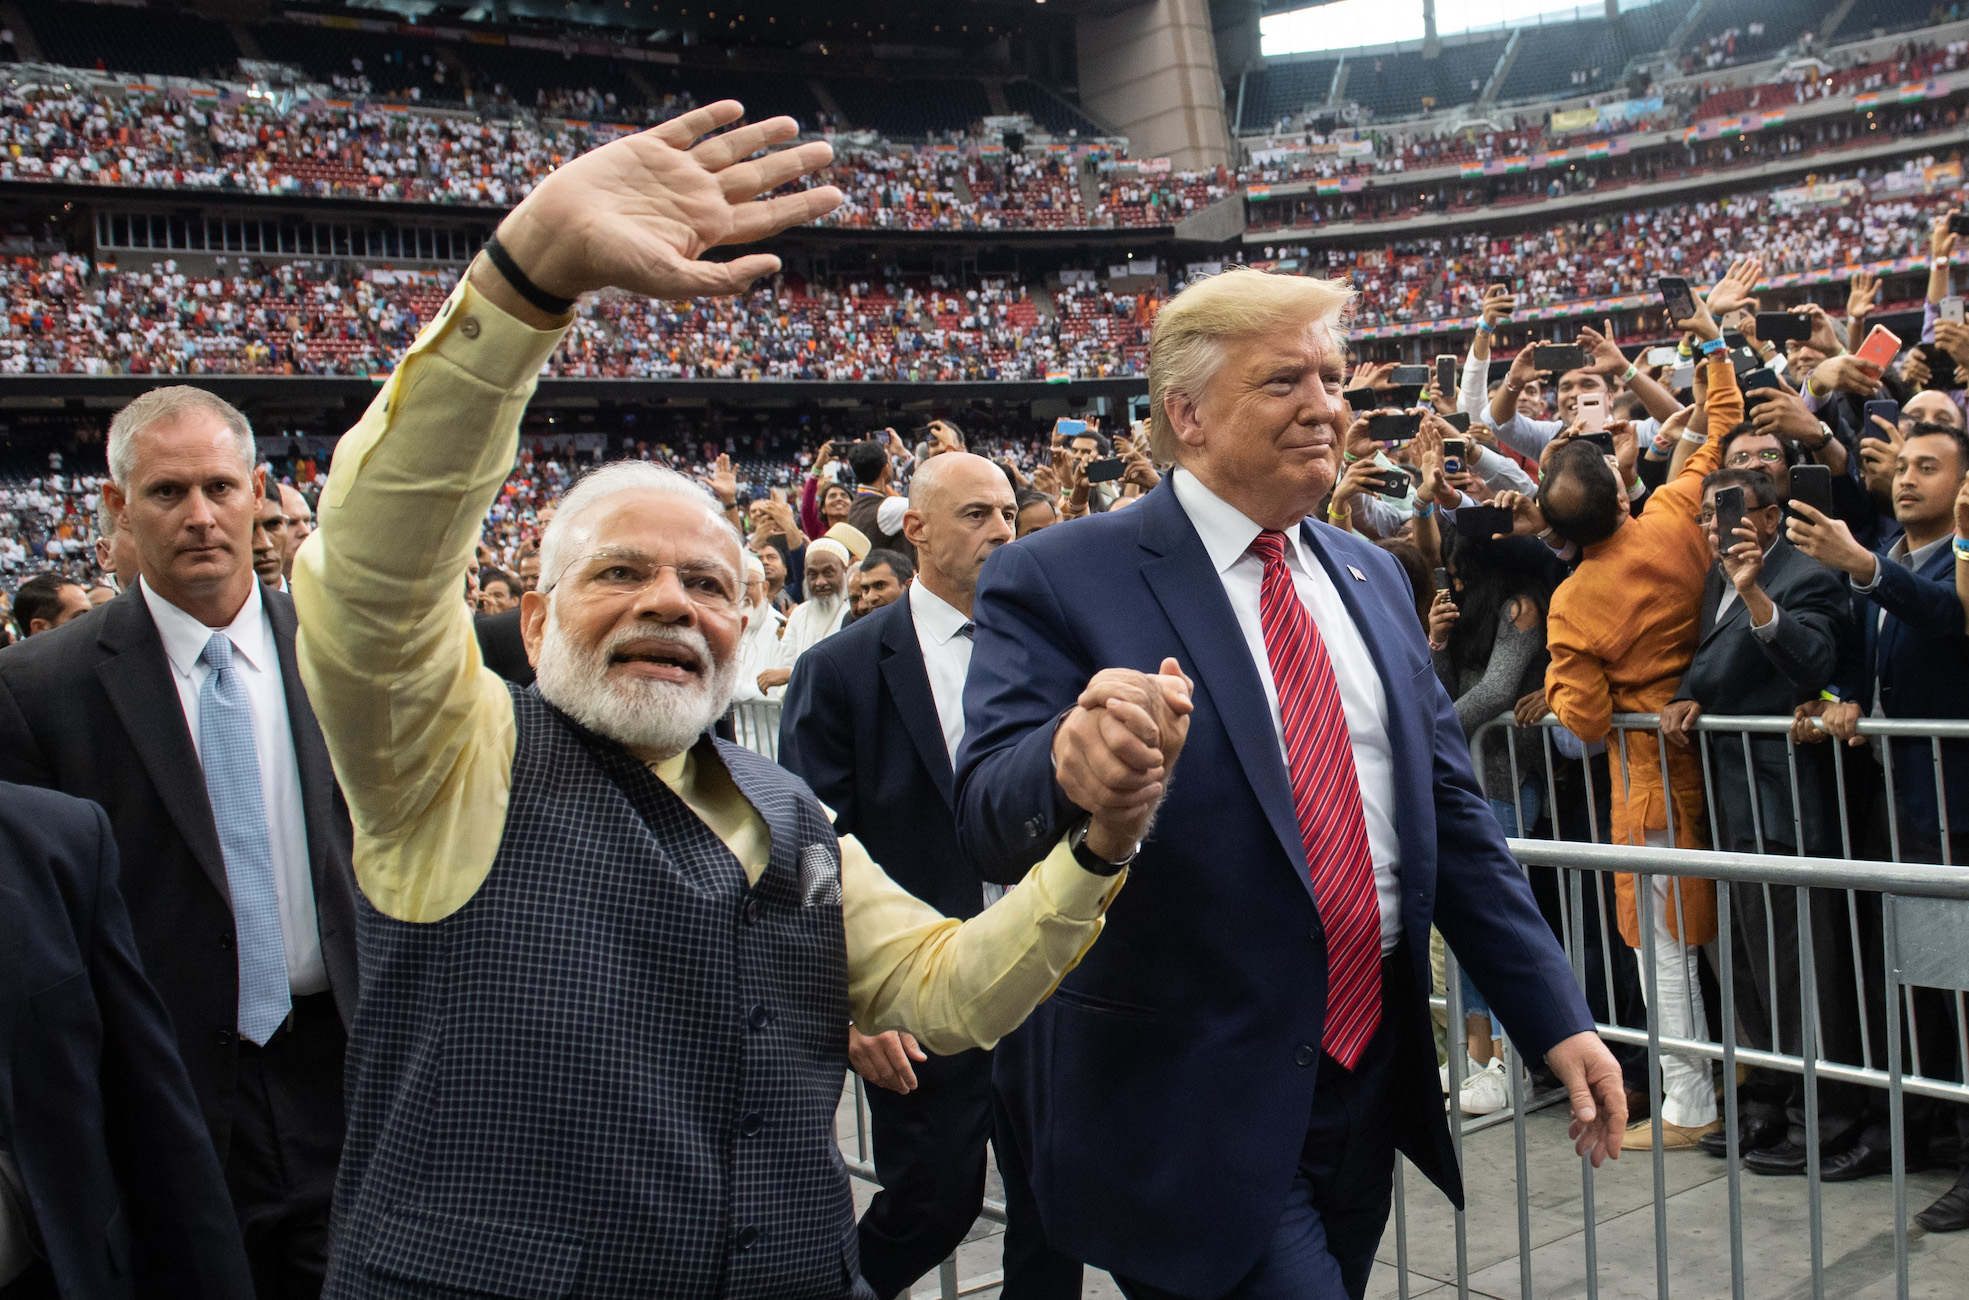 Tổng thống Hoa Kỳ Donald Trump và Thủ tướng Ấn Độ Narendra Modi tham dự buổi lễ "Xin chào, Modi!" tại Sân vận động NRG ở Houston, Texas, ngày 22/9/2019. (Ảnh Saul Loeb/AFP / Getty Images)